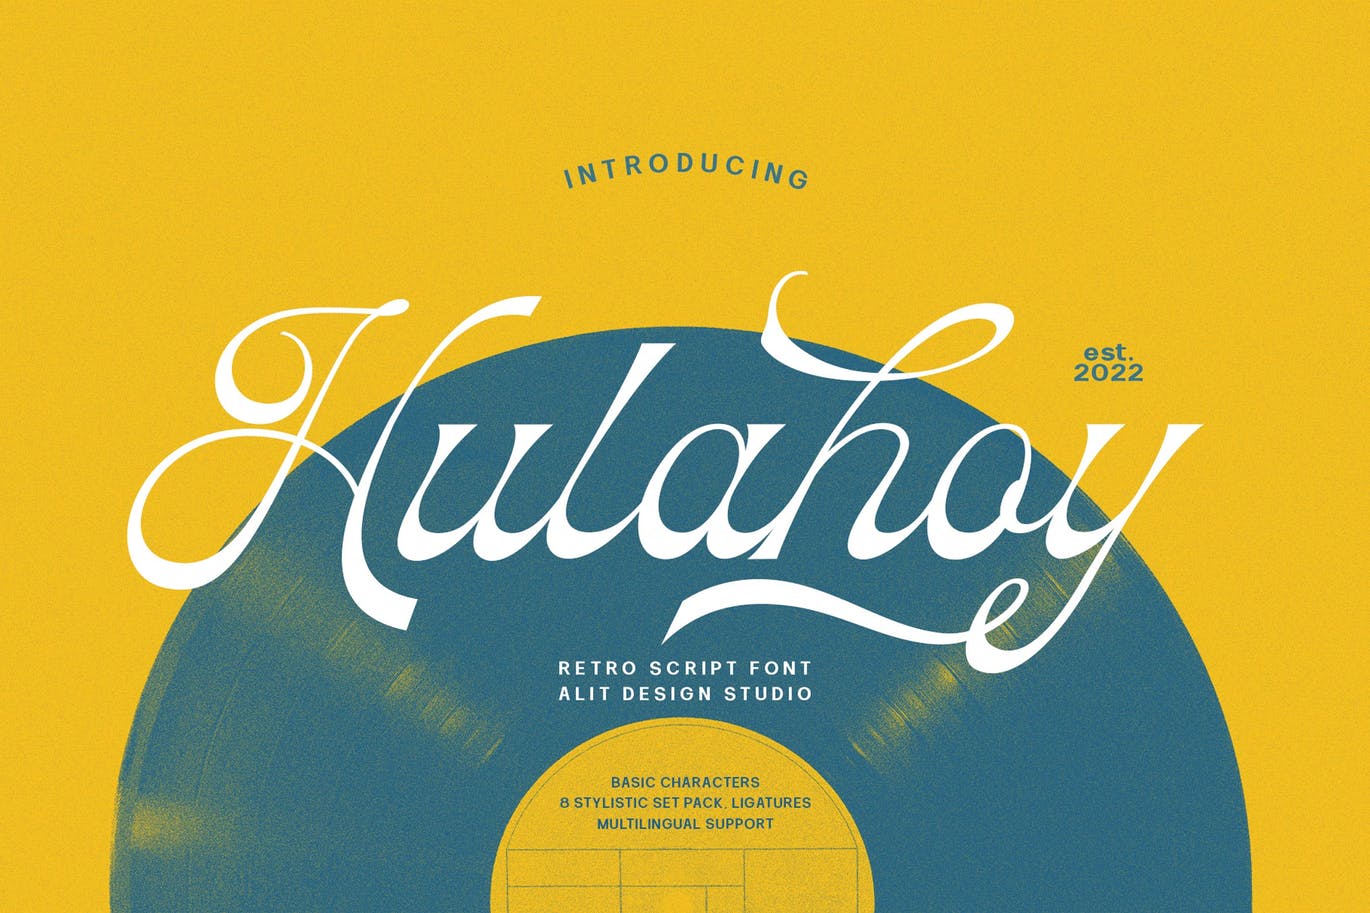 70年代风格音符字体素材 Hulahoy Typeface 设计素材 第1张